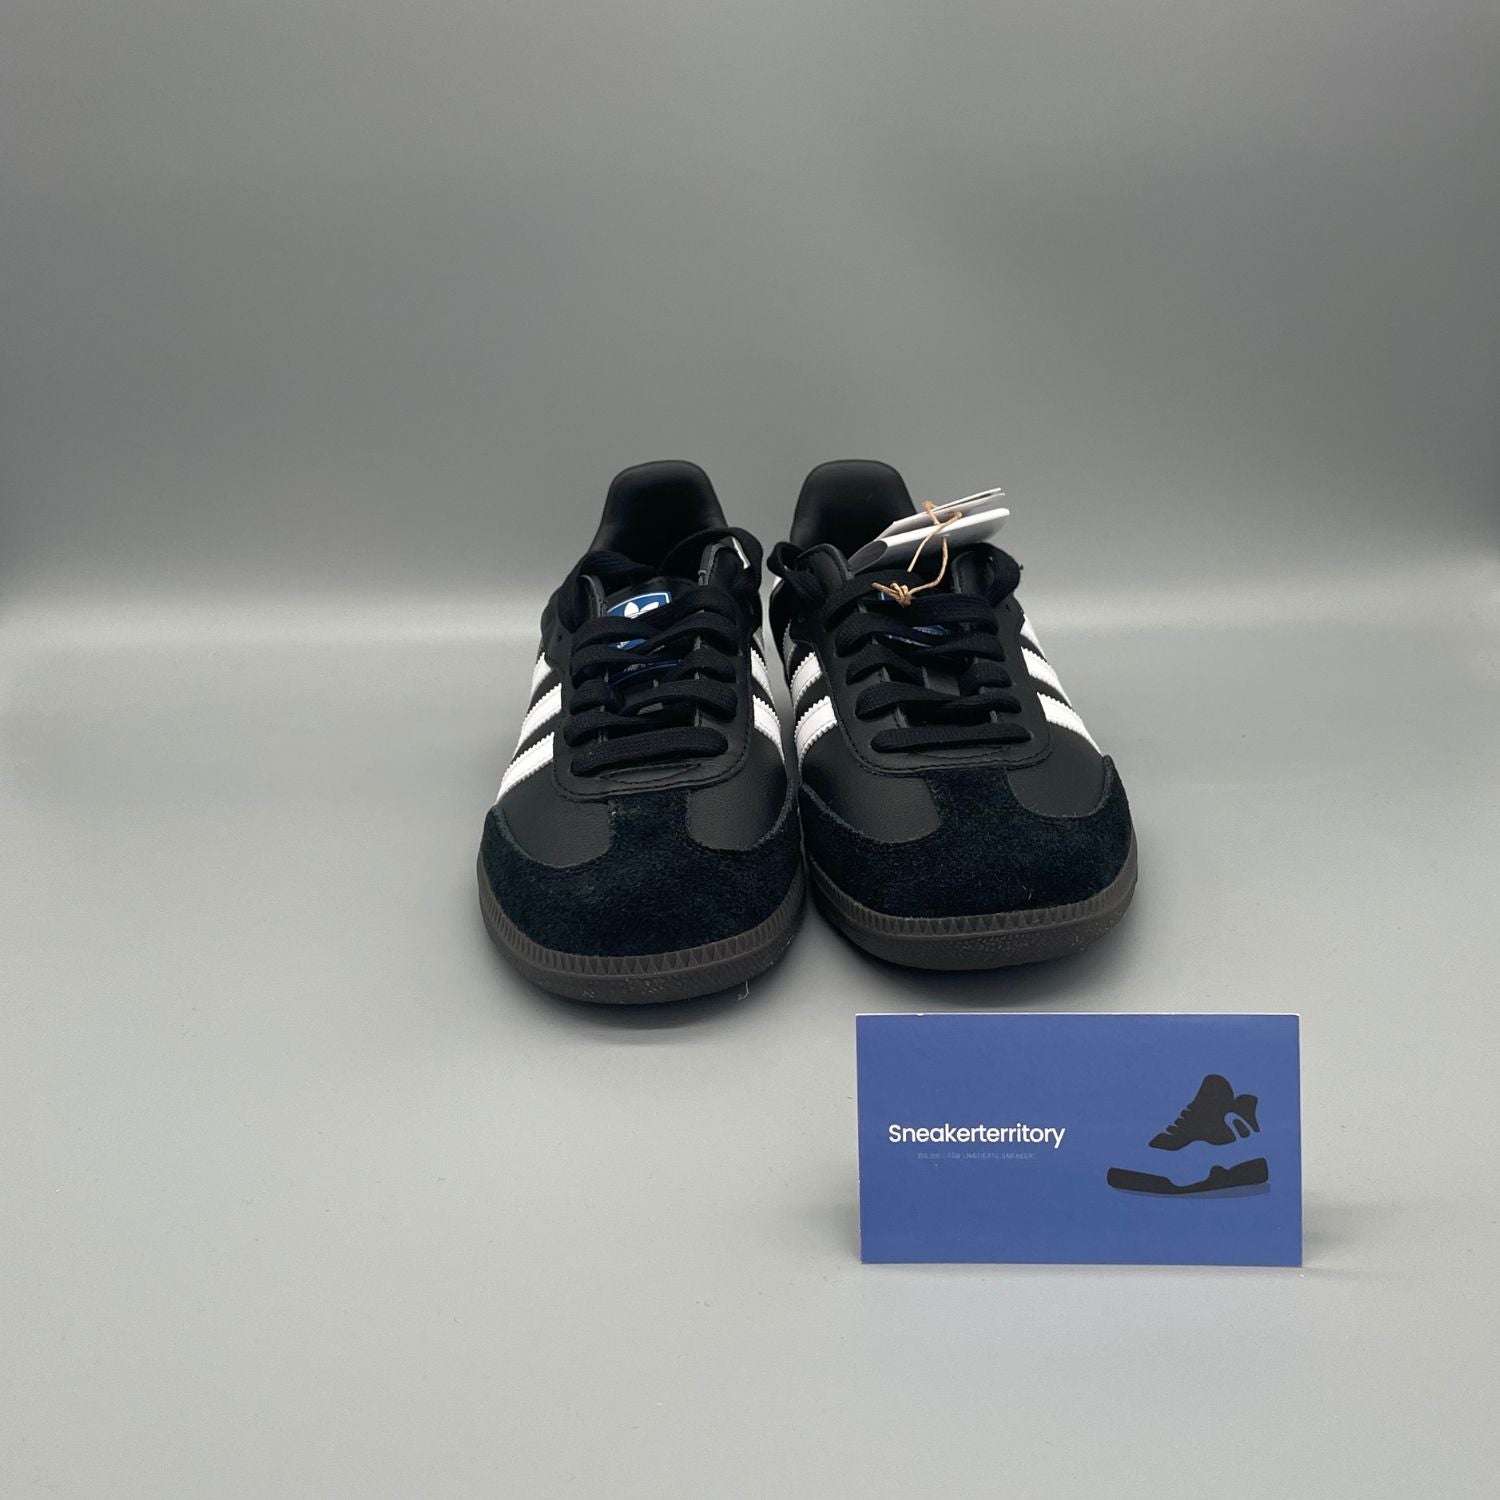 Adidas Samba OG Black White Gum - Sneakerterritory; Sneaker Territory